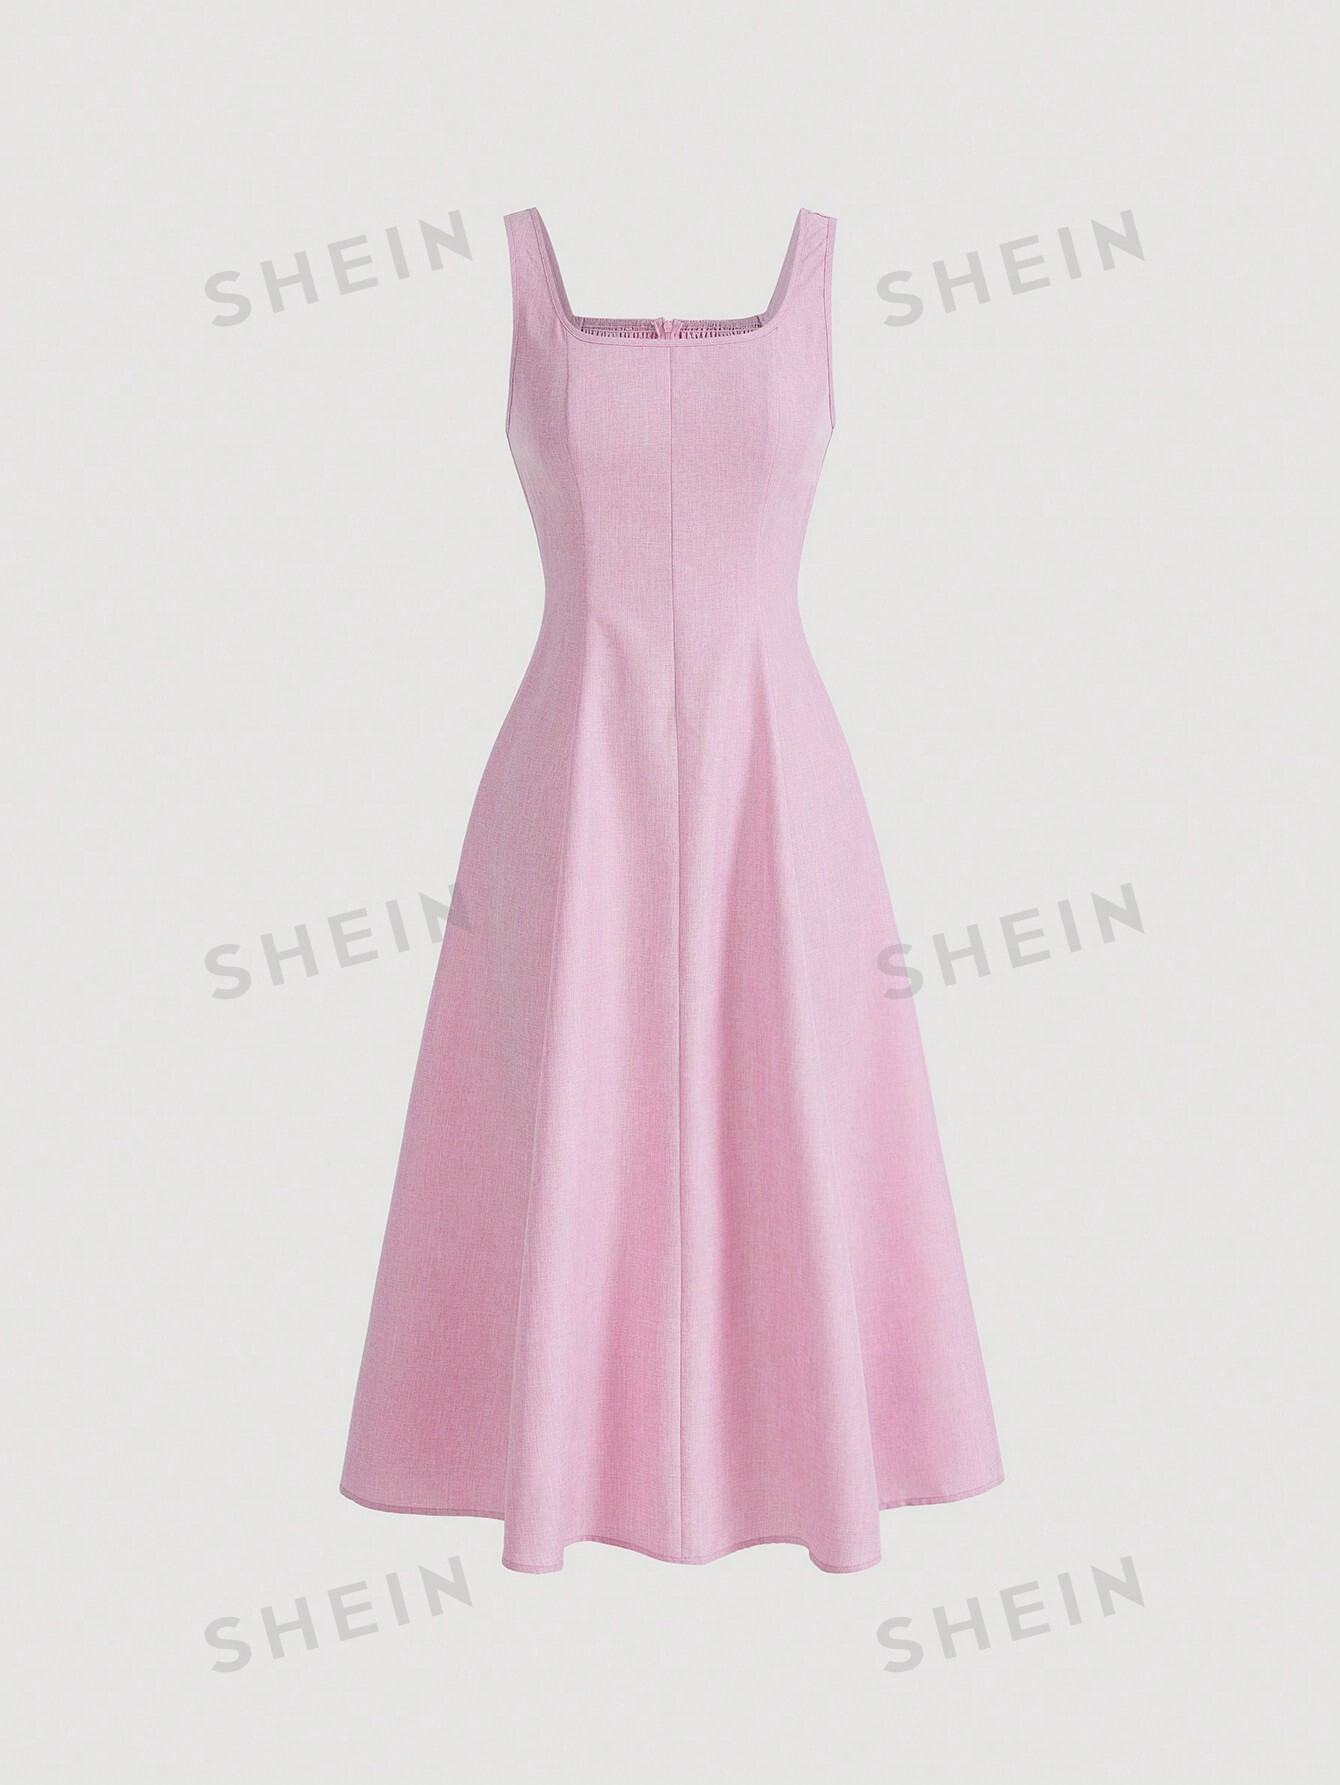 shein mod однотонное платье с гофрированной спиной и расклешенным подолом синий SHEIN MOD однотонное платье с гофрированной спиной и расклешенным подолом, розовый